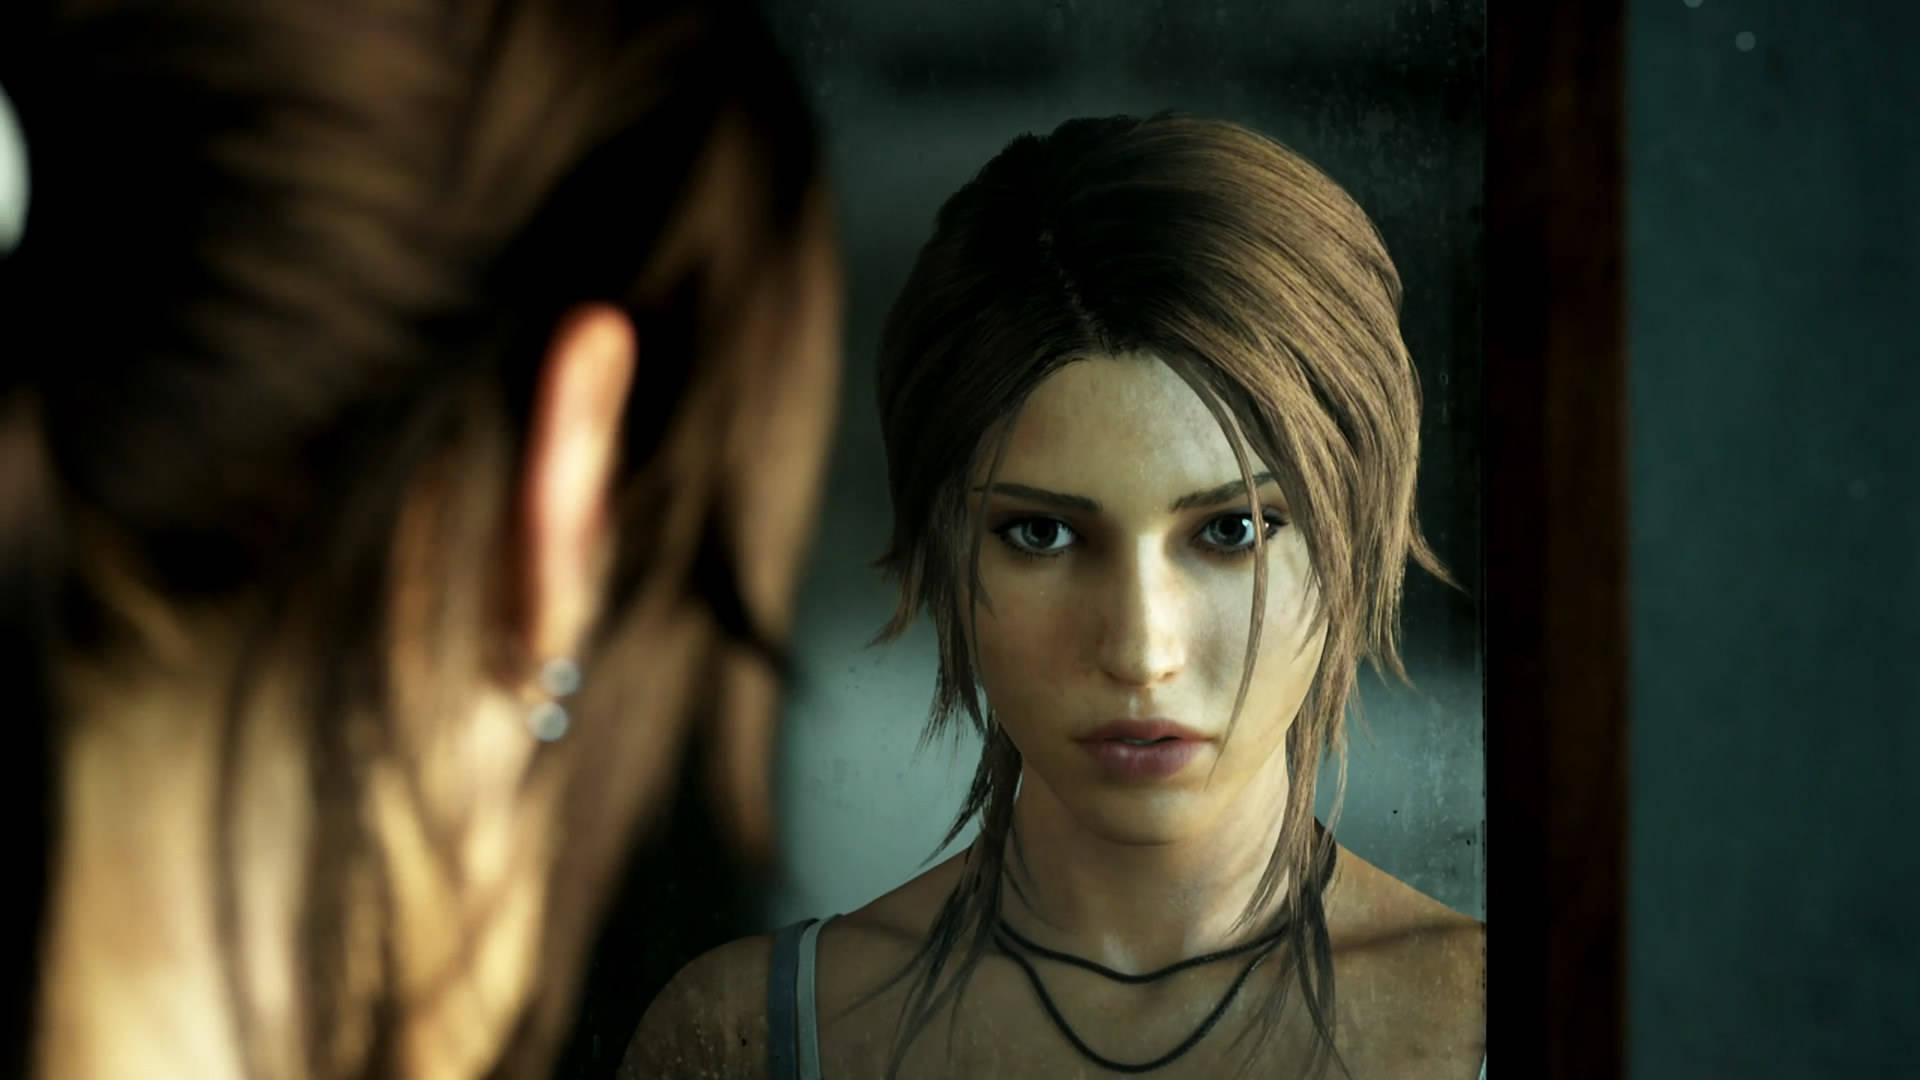 Tombraider 9 Lara Croft Tittar På Sig Själv I Spegeln. Wallpaper